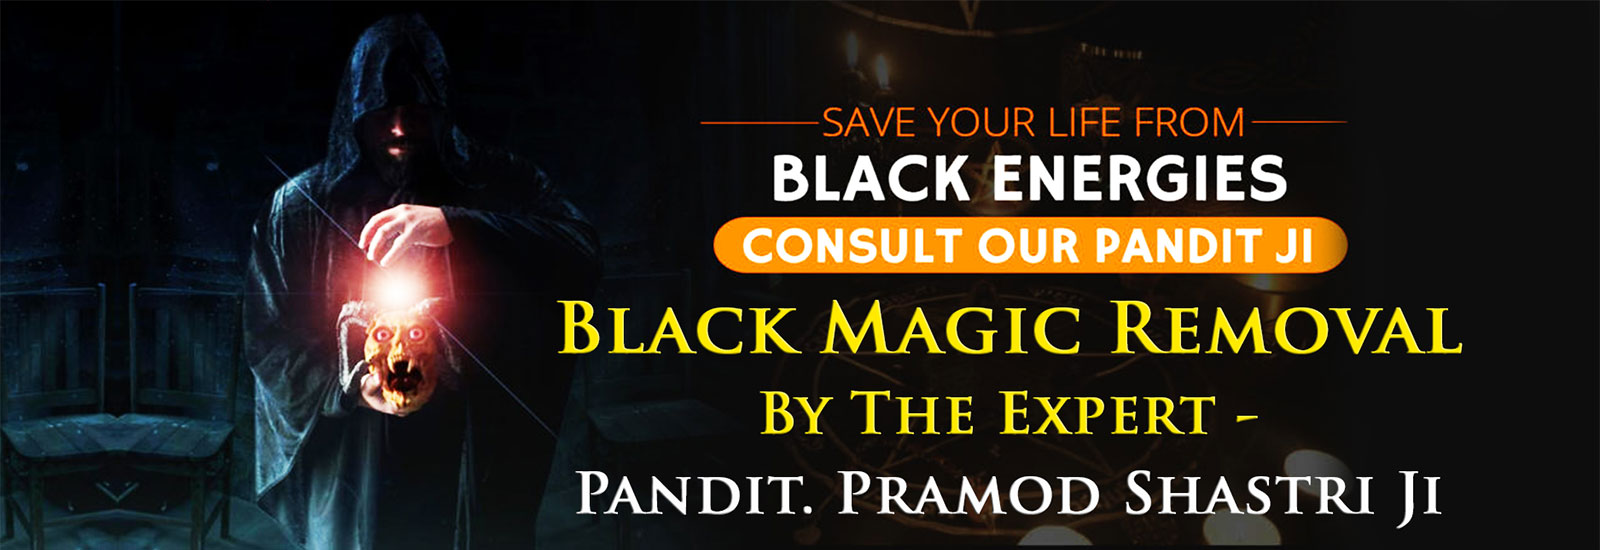 Black Magic Removal Specialist - Astrologer Pramod Shastri Ji